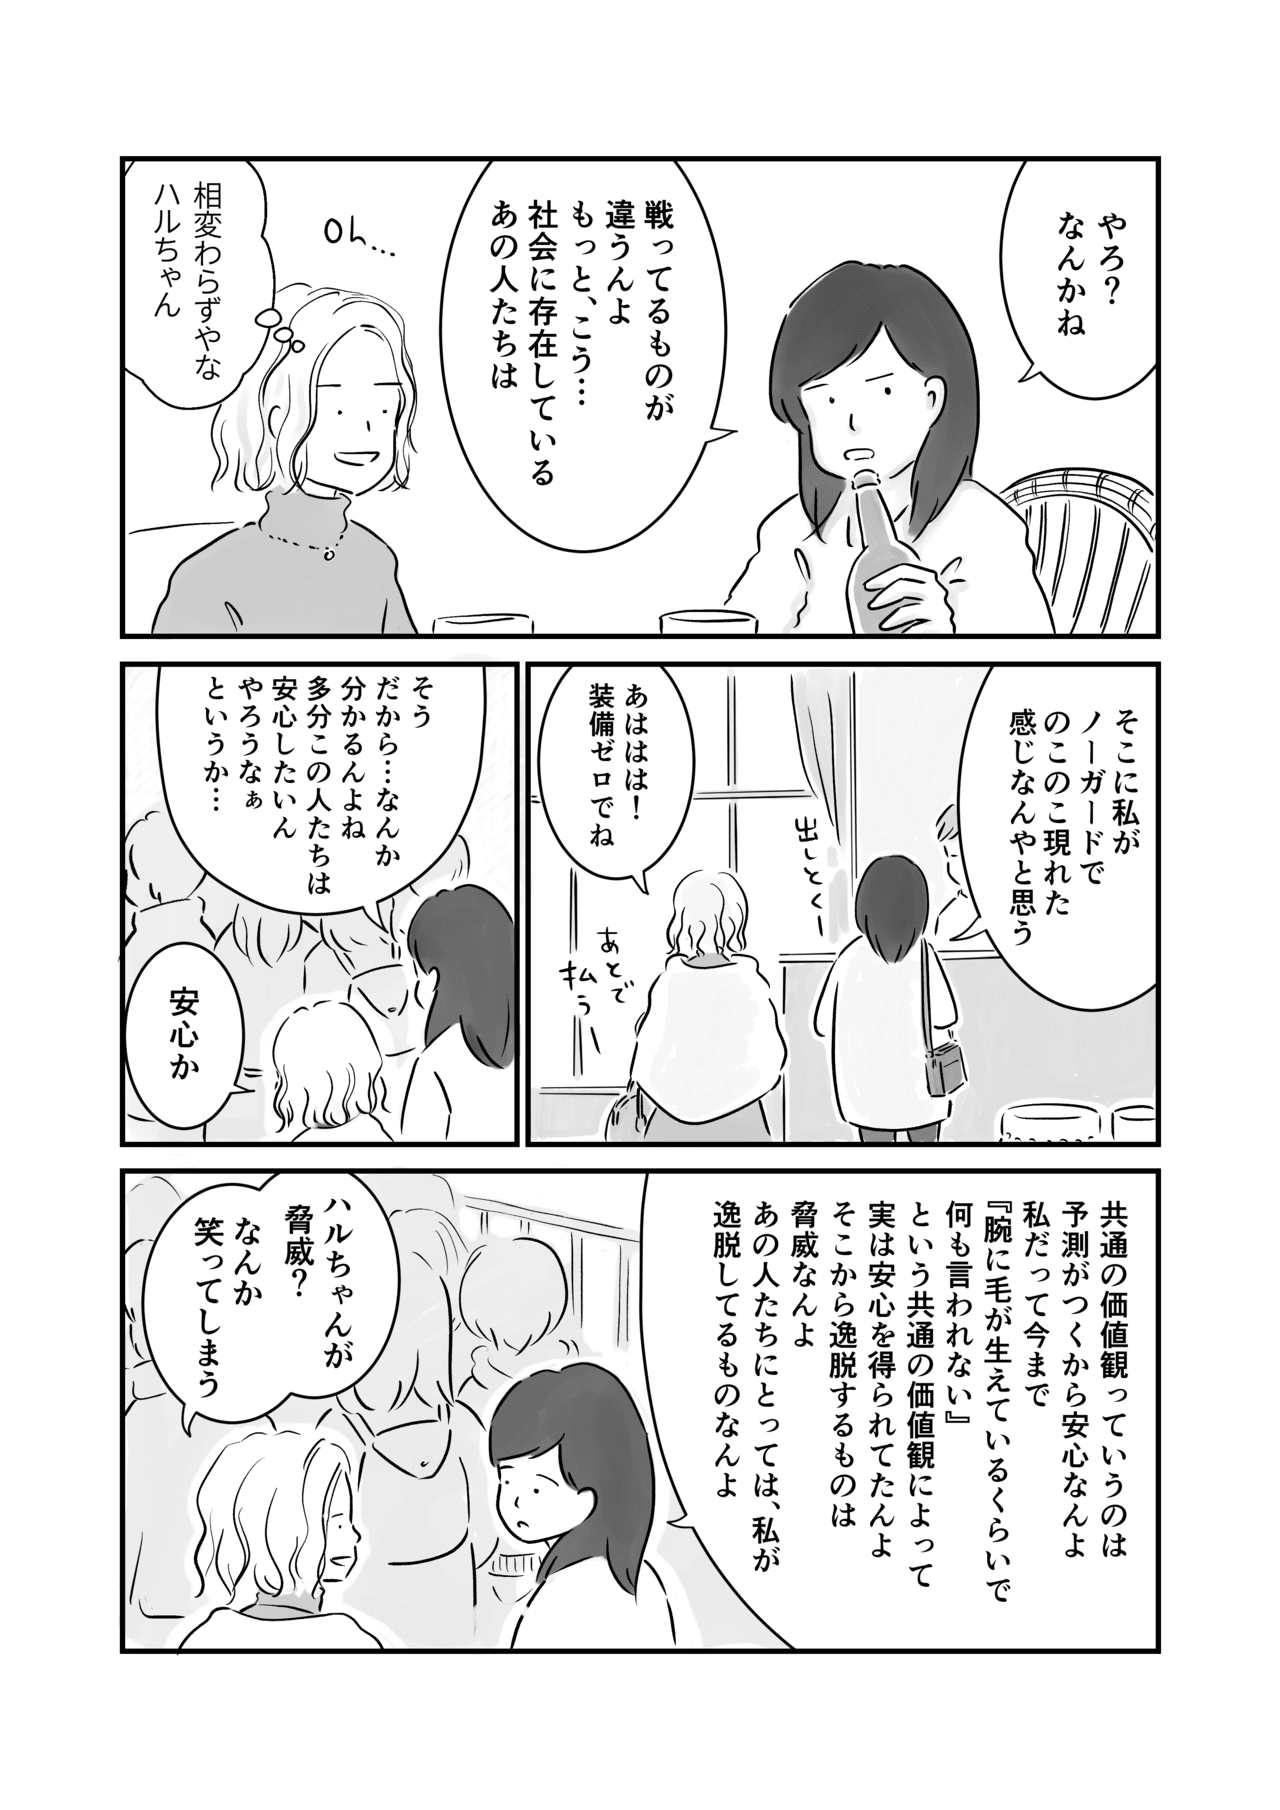 コミック5_出力_003